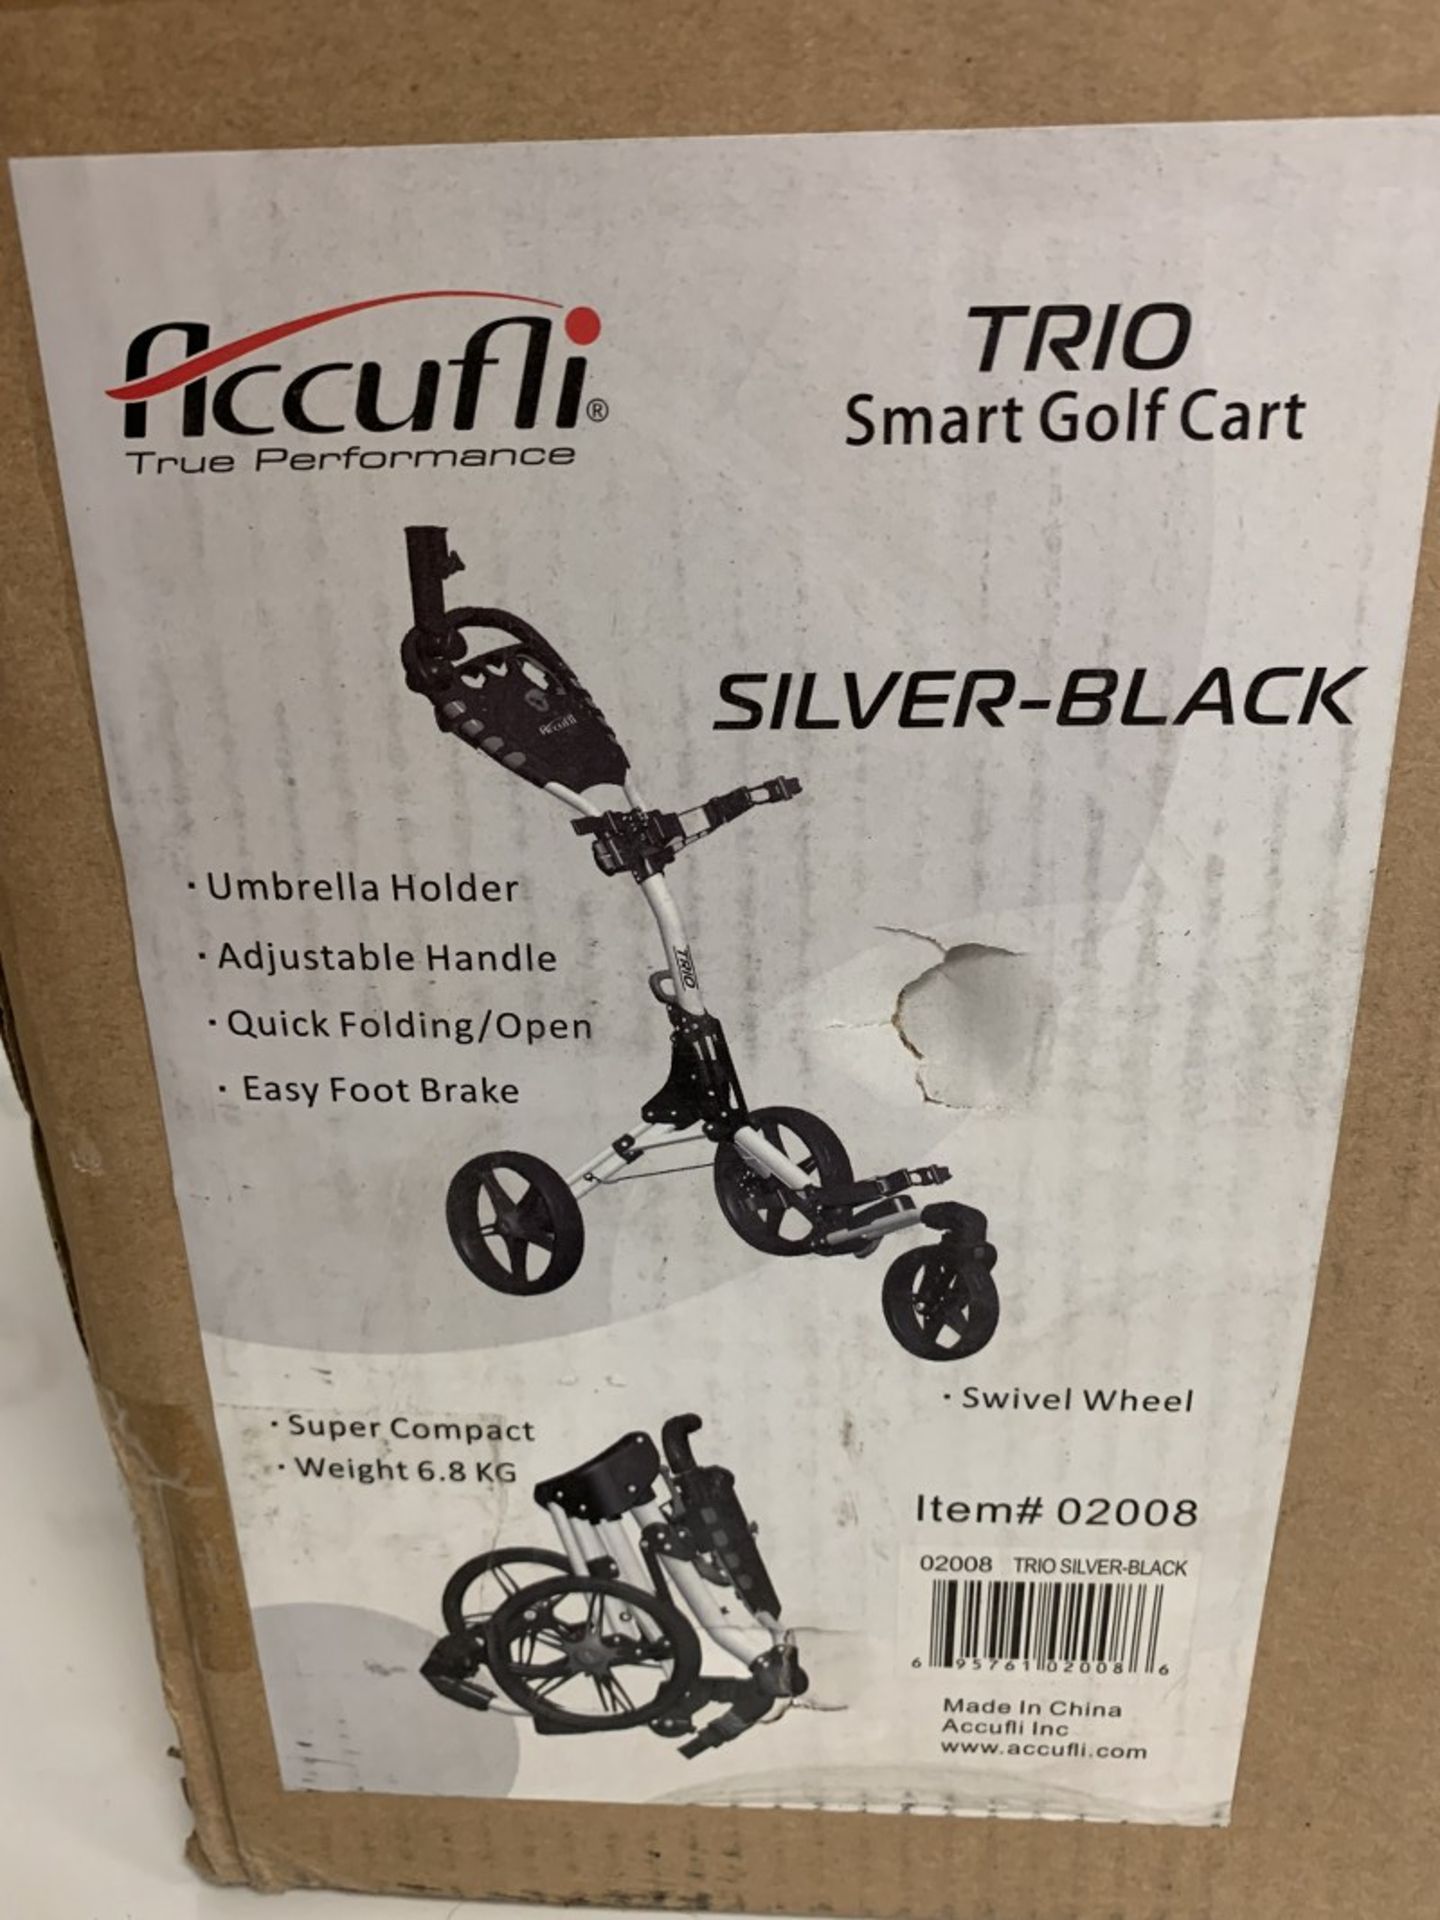 Accufli - Trio Smart Golf Cart - Image 2 of 2